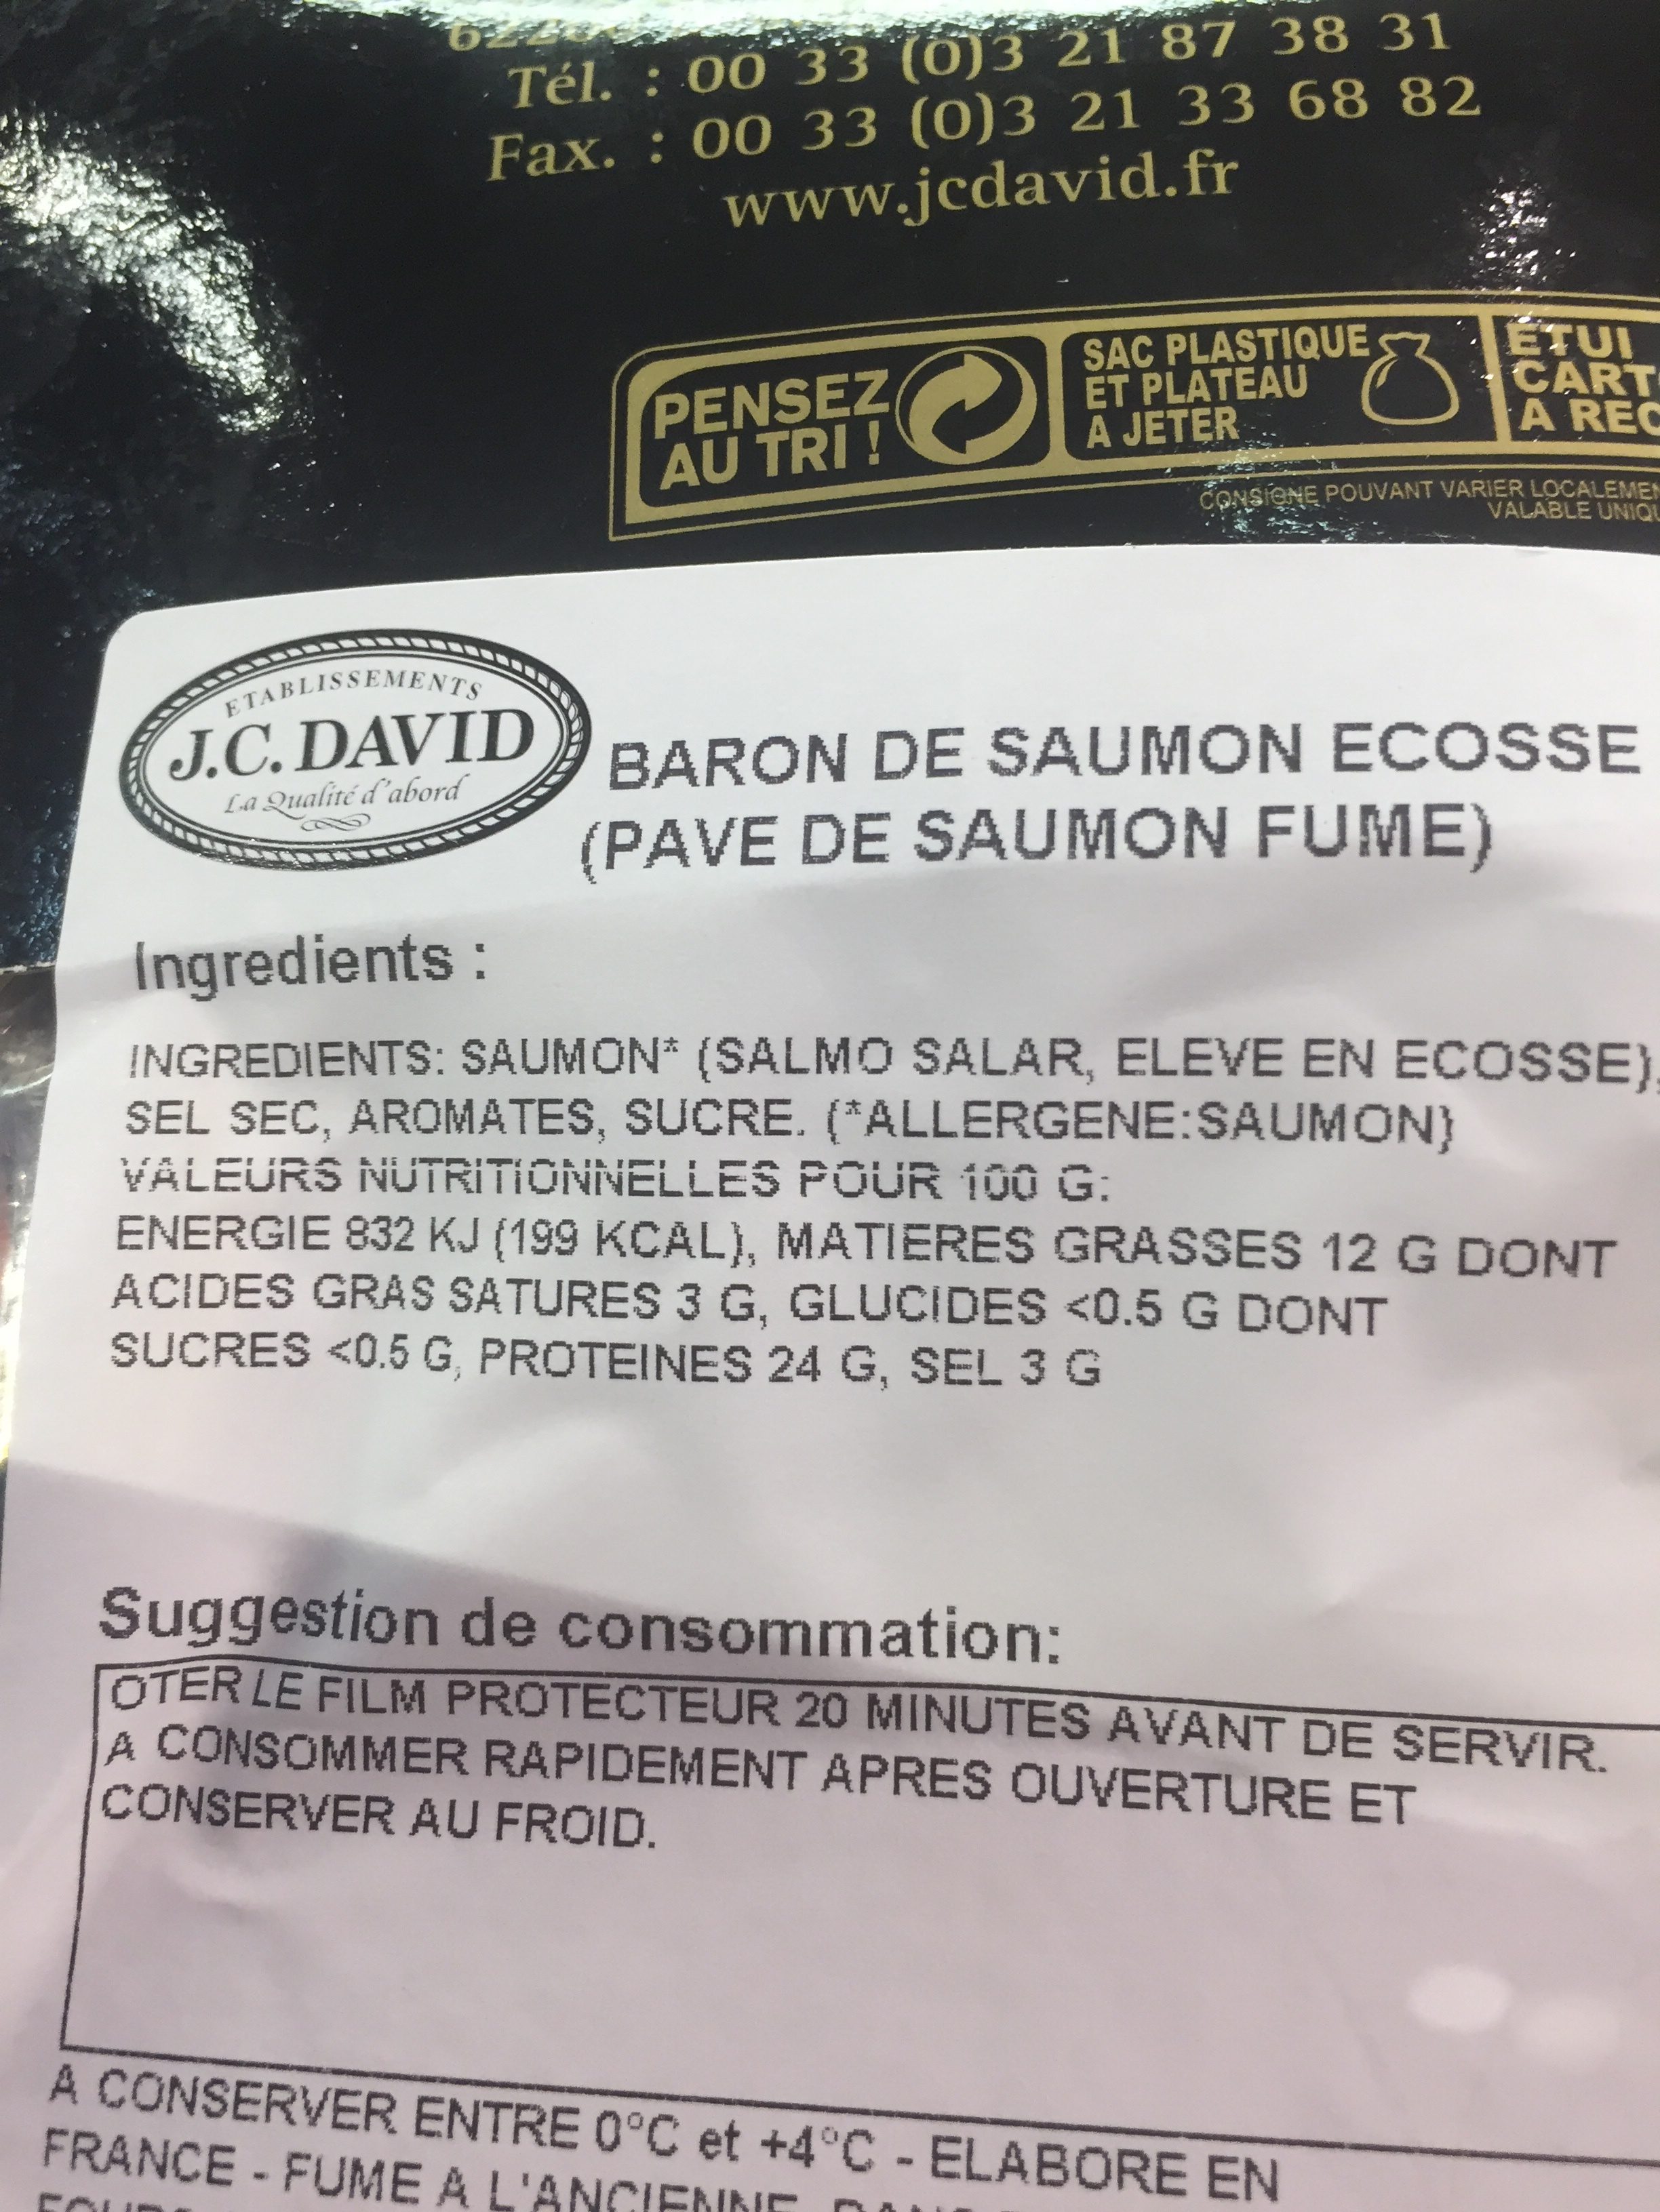 Baron de saumon fumé à l'ancienne - Ingredients - fr